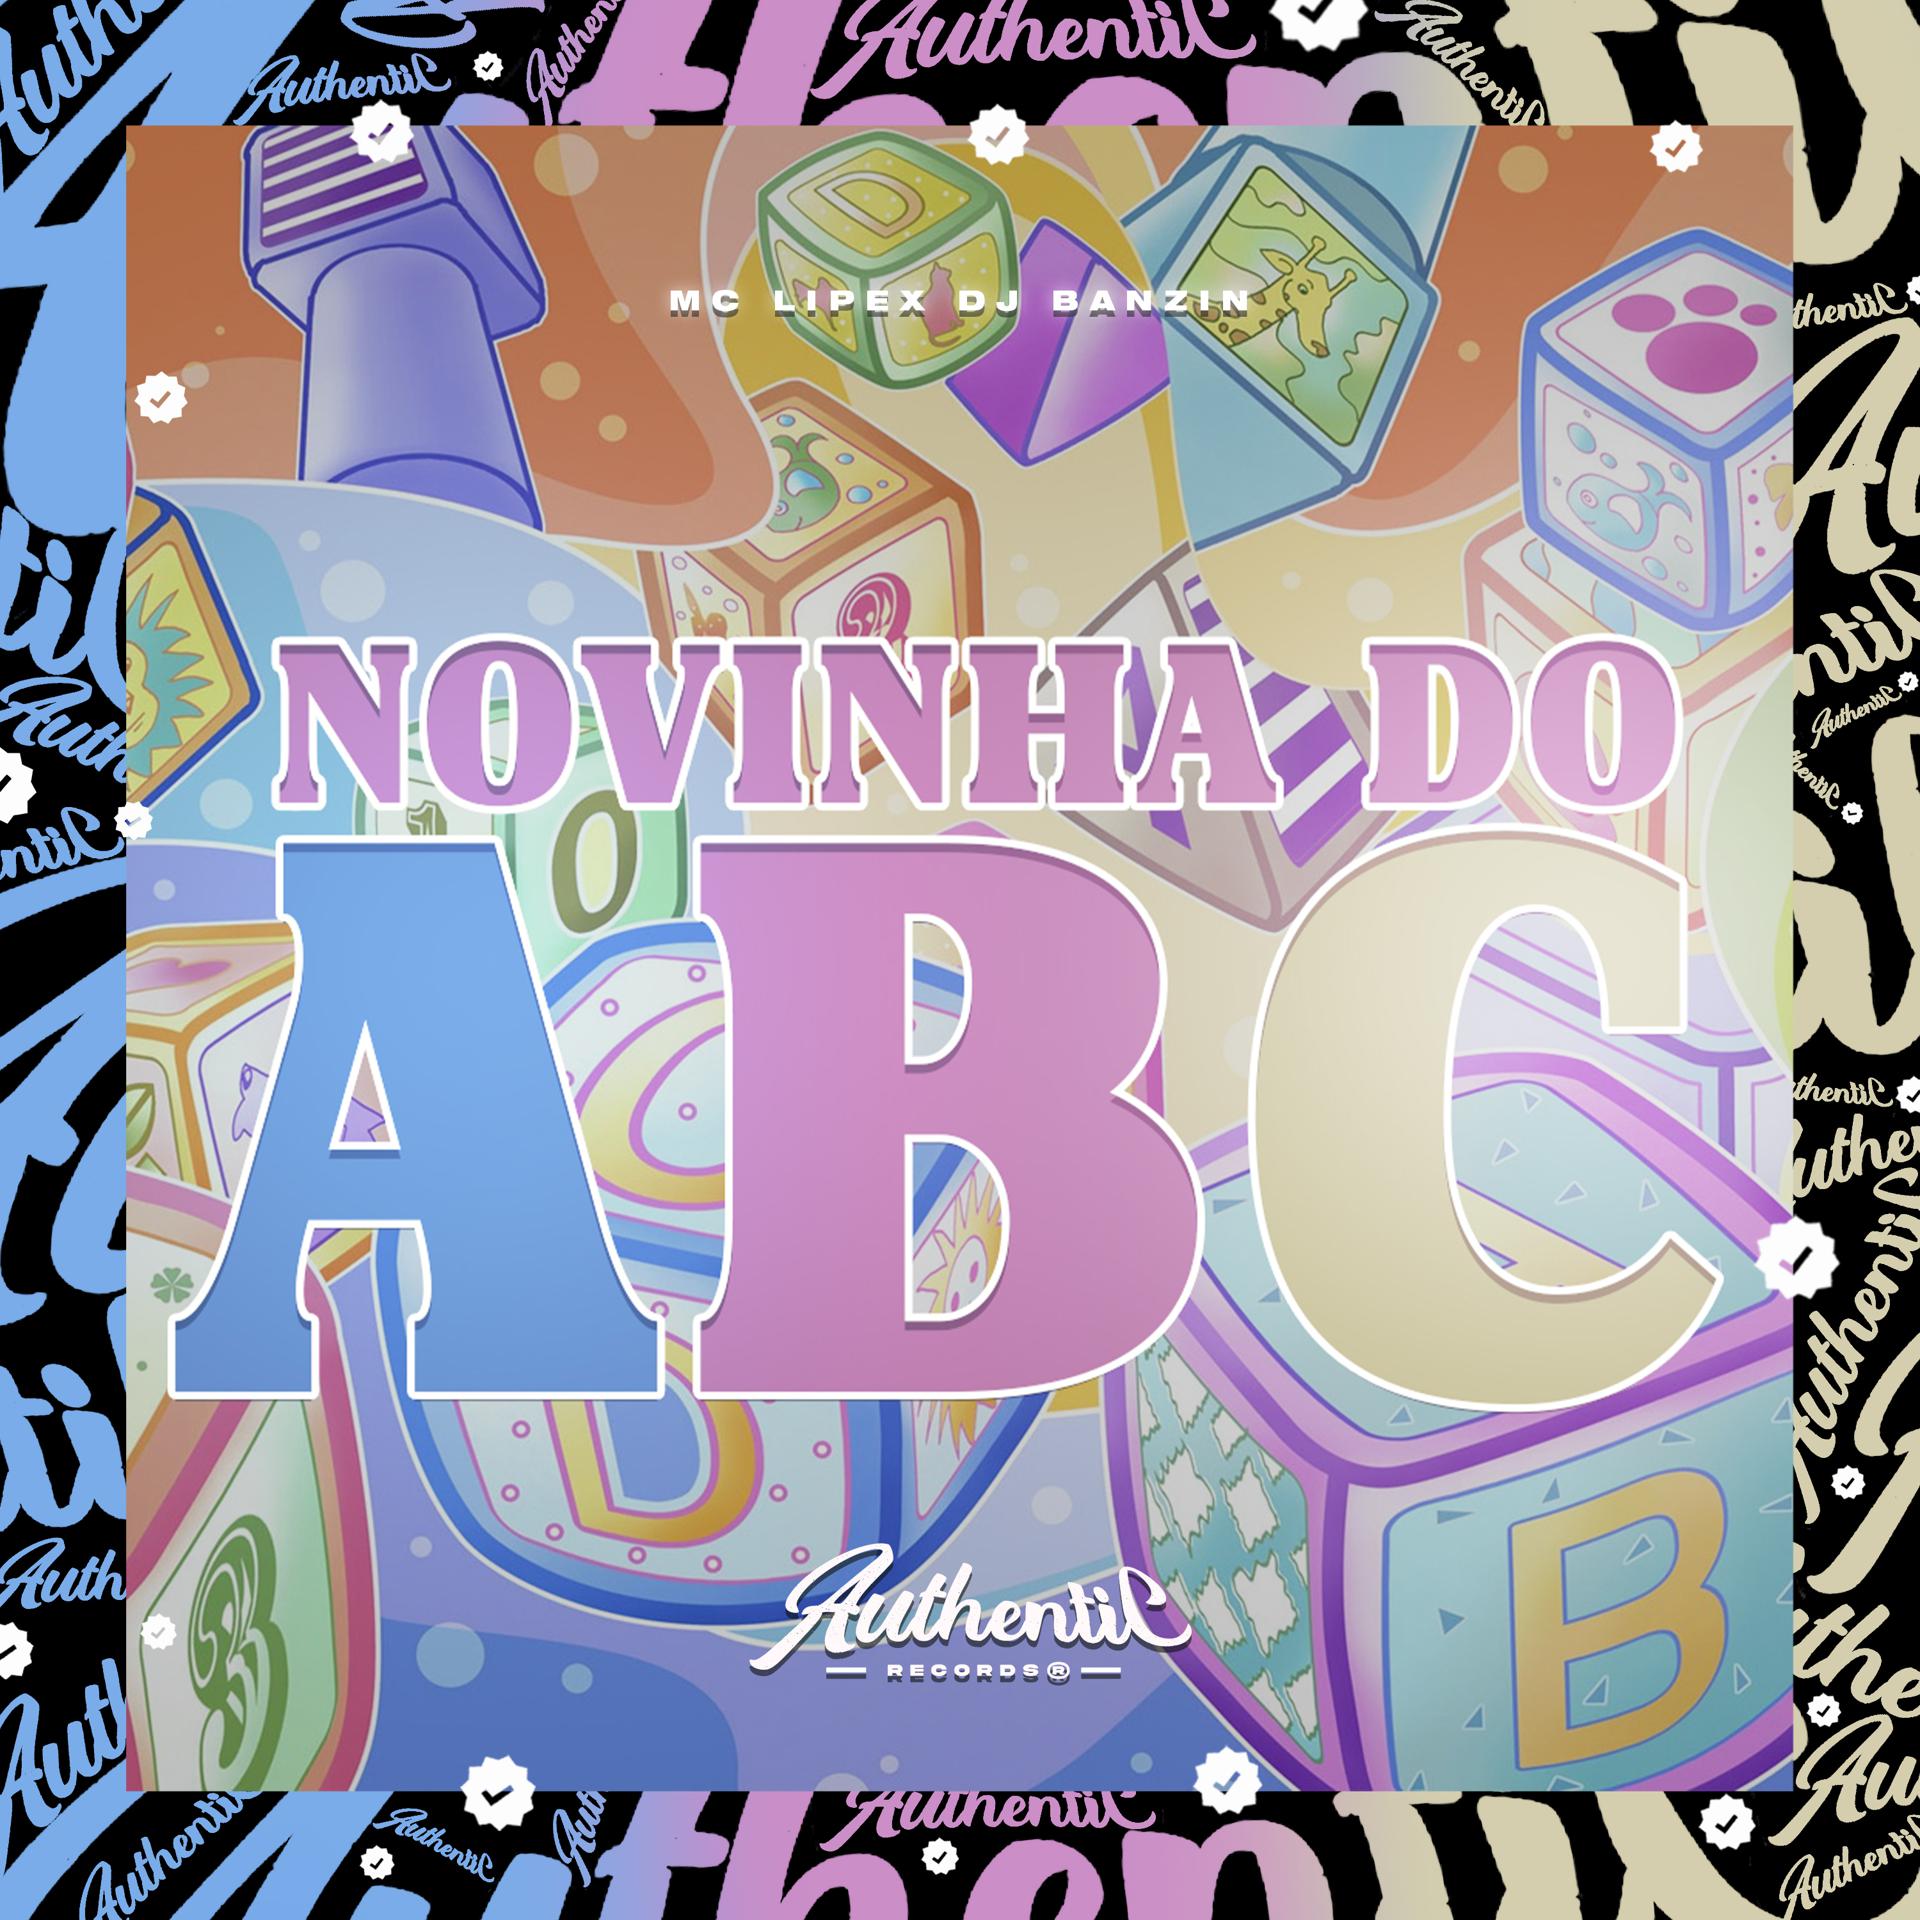 Постер альбома Novinha do Abc